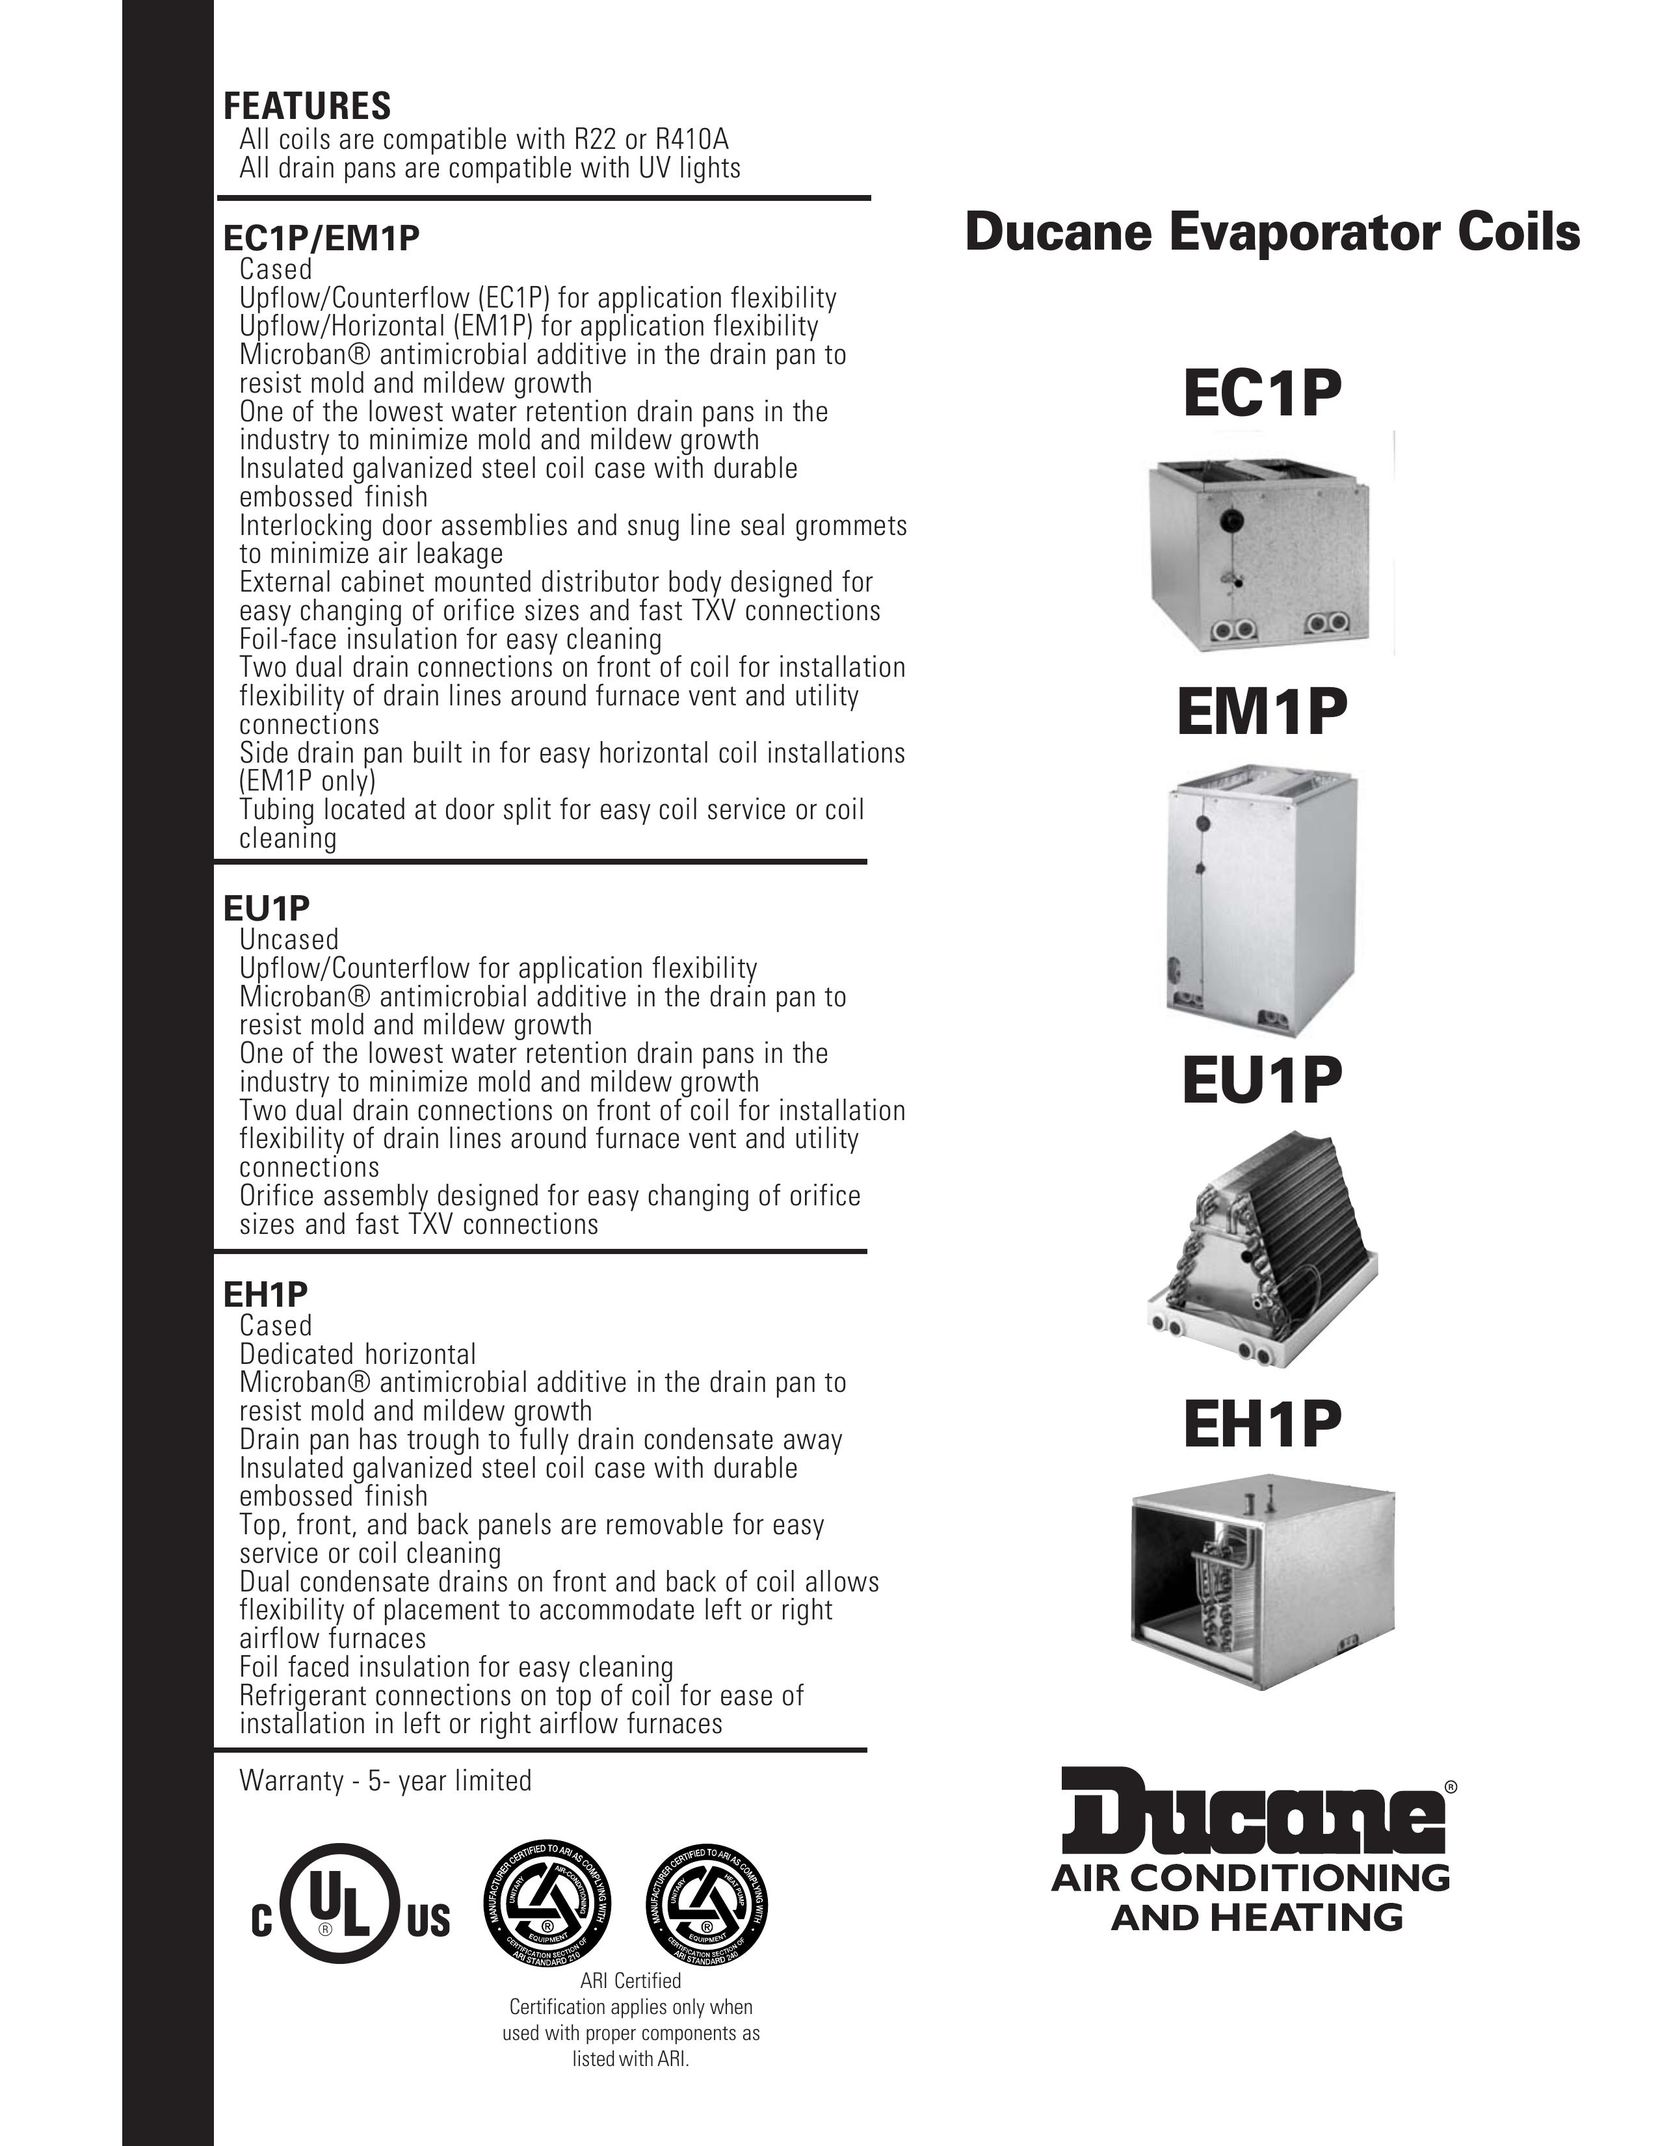 Ducane (HVAC) EC1P Air Conditioner User Manual